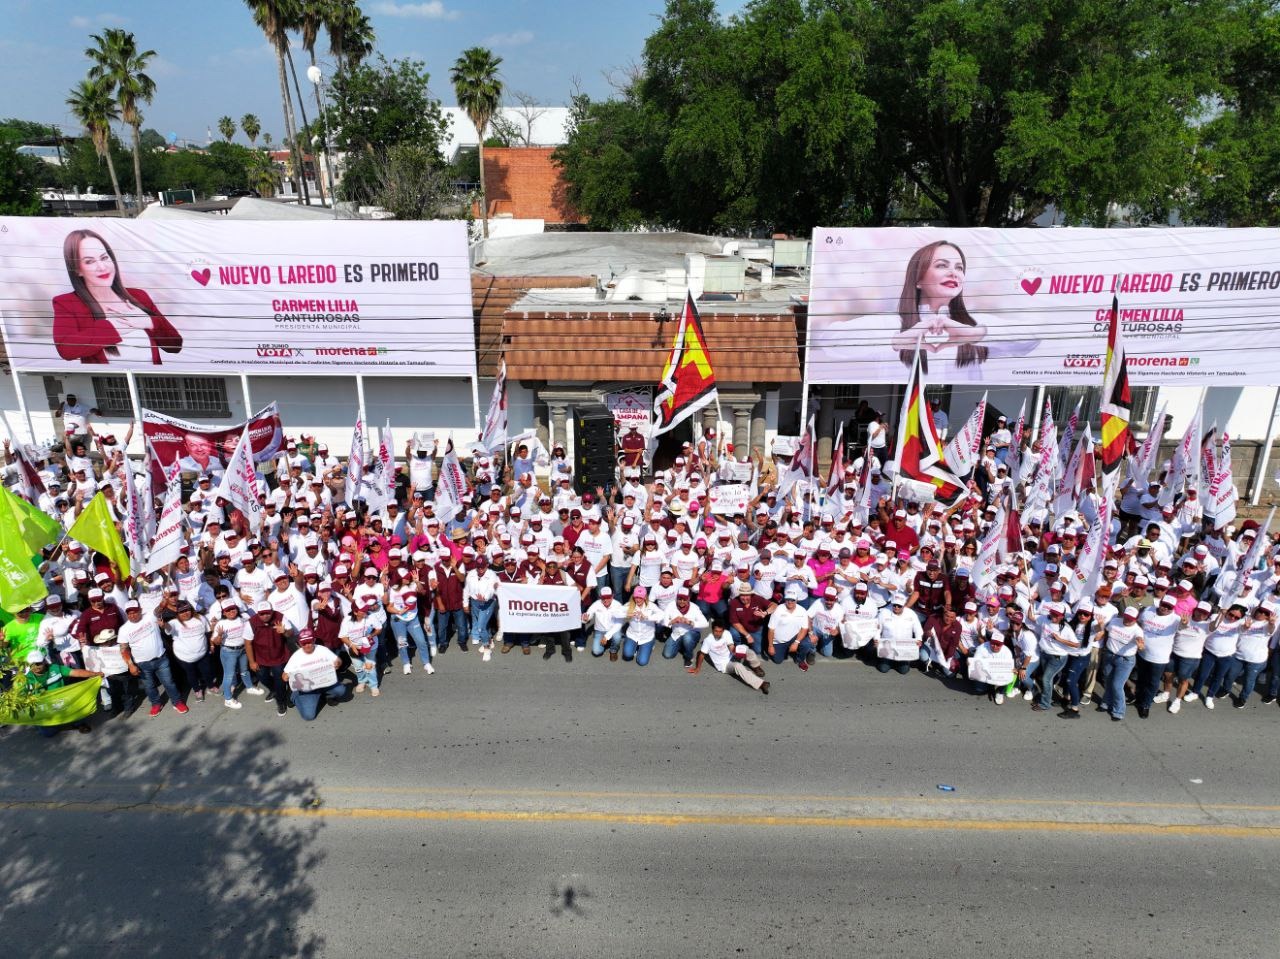 Se unen cientos de neolaredenses a pegoteo en apoyo a Carmen Lilia Canturosas